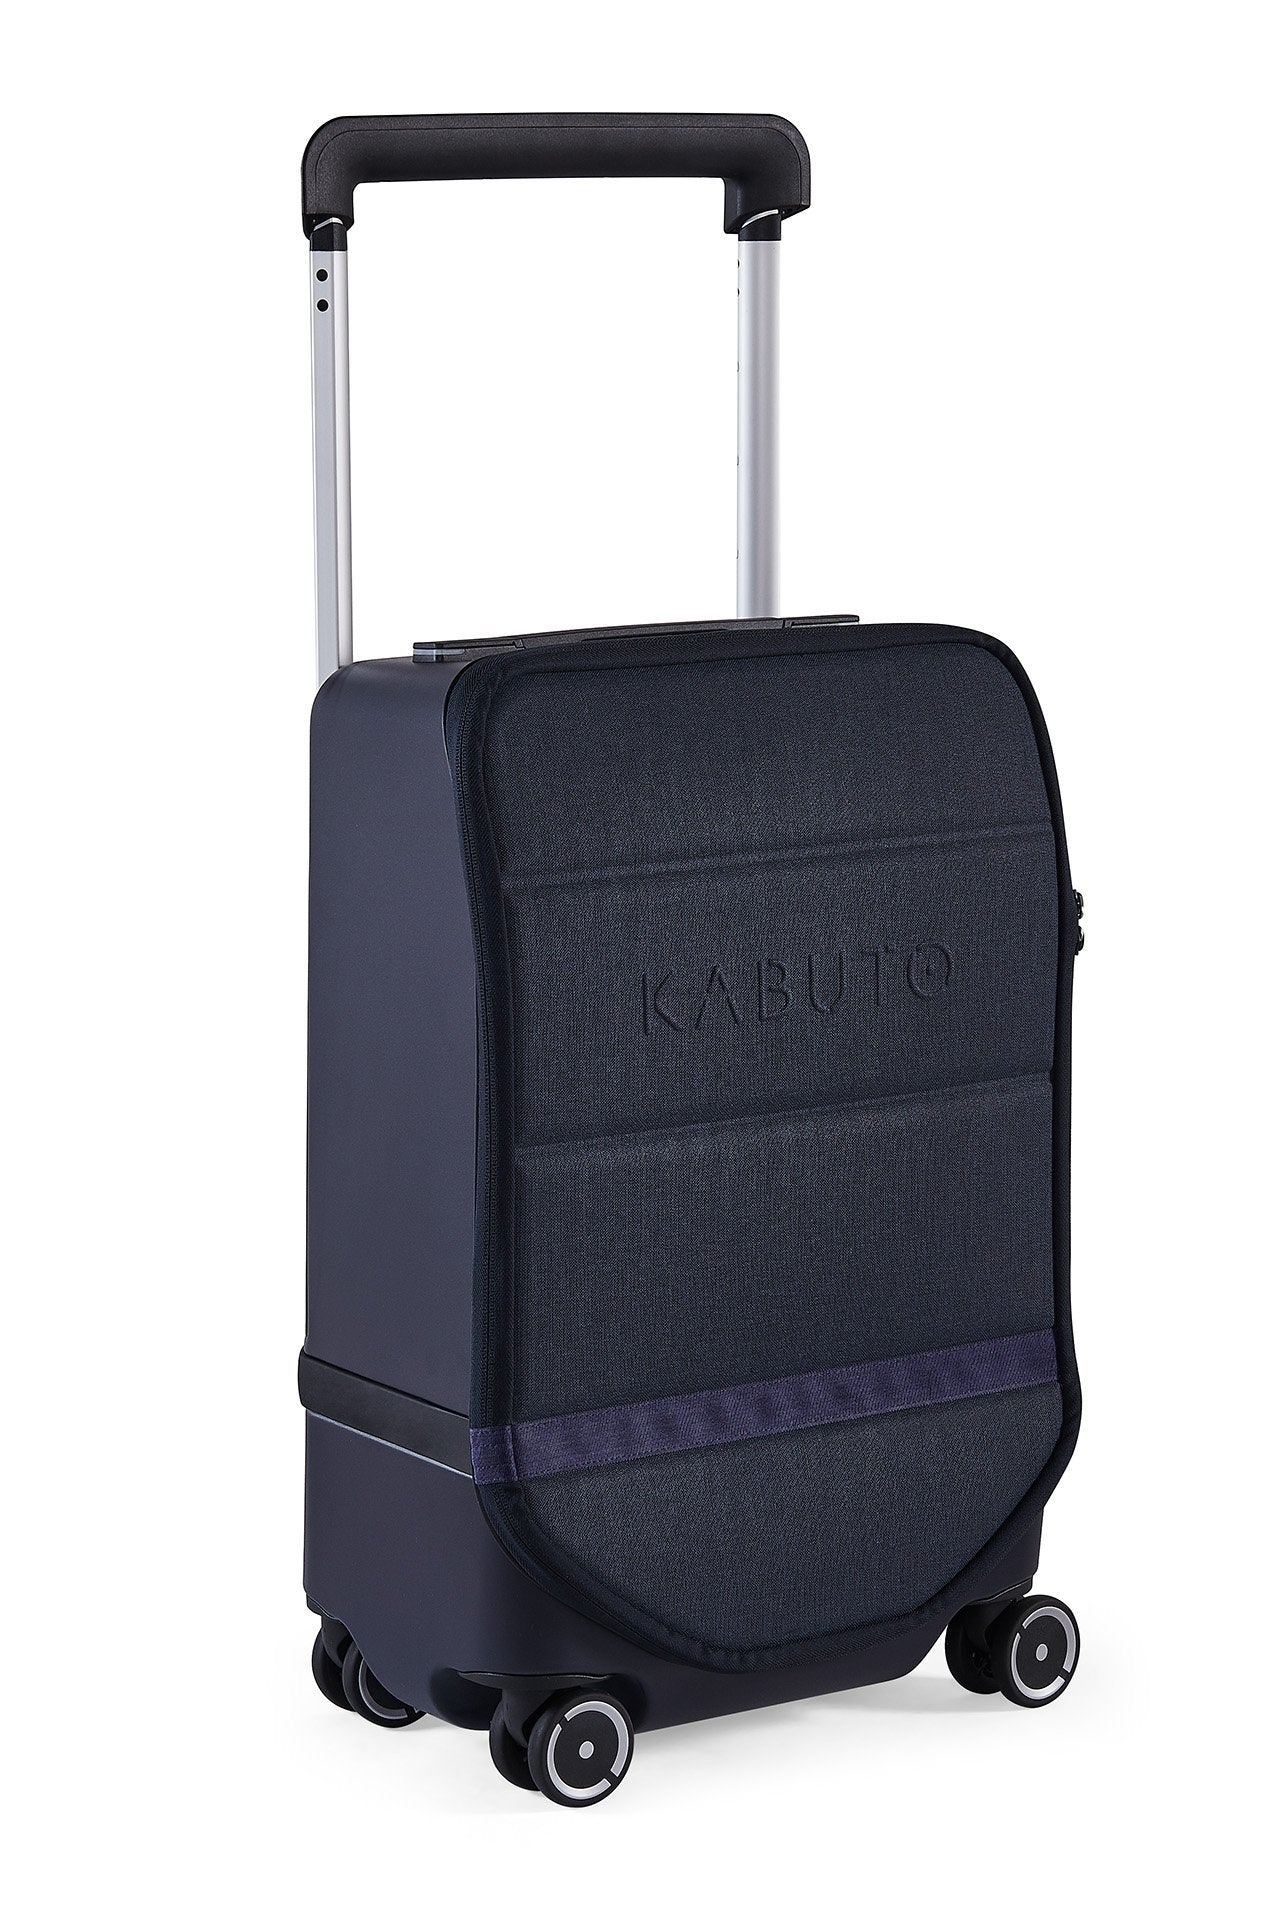 Kabuto Carry-on 4x4-Lite